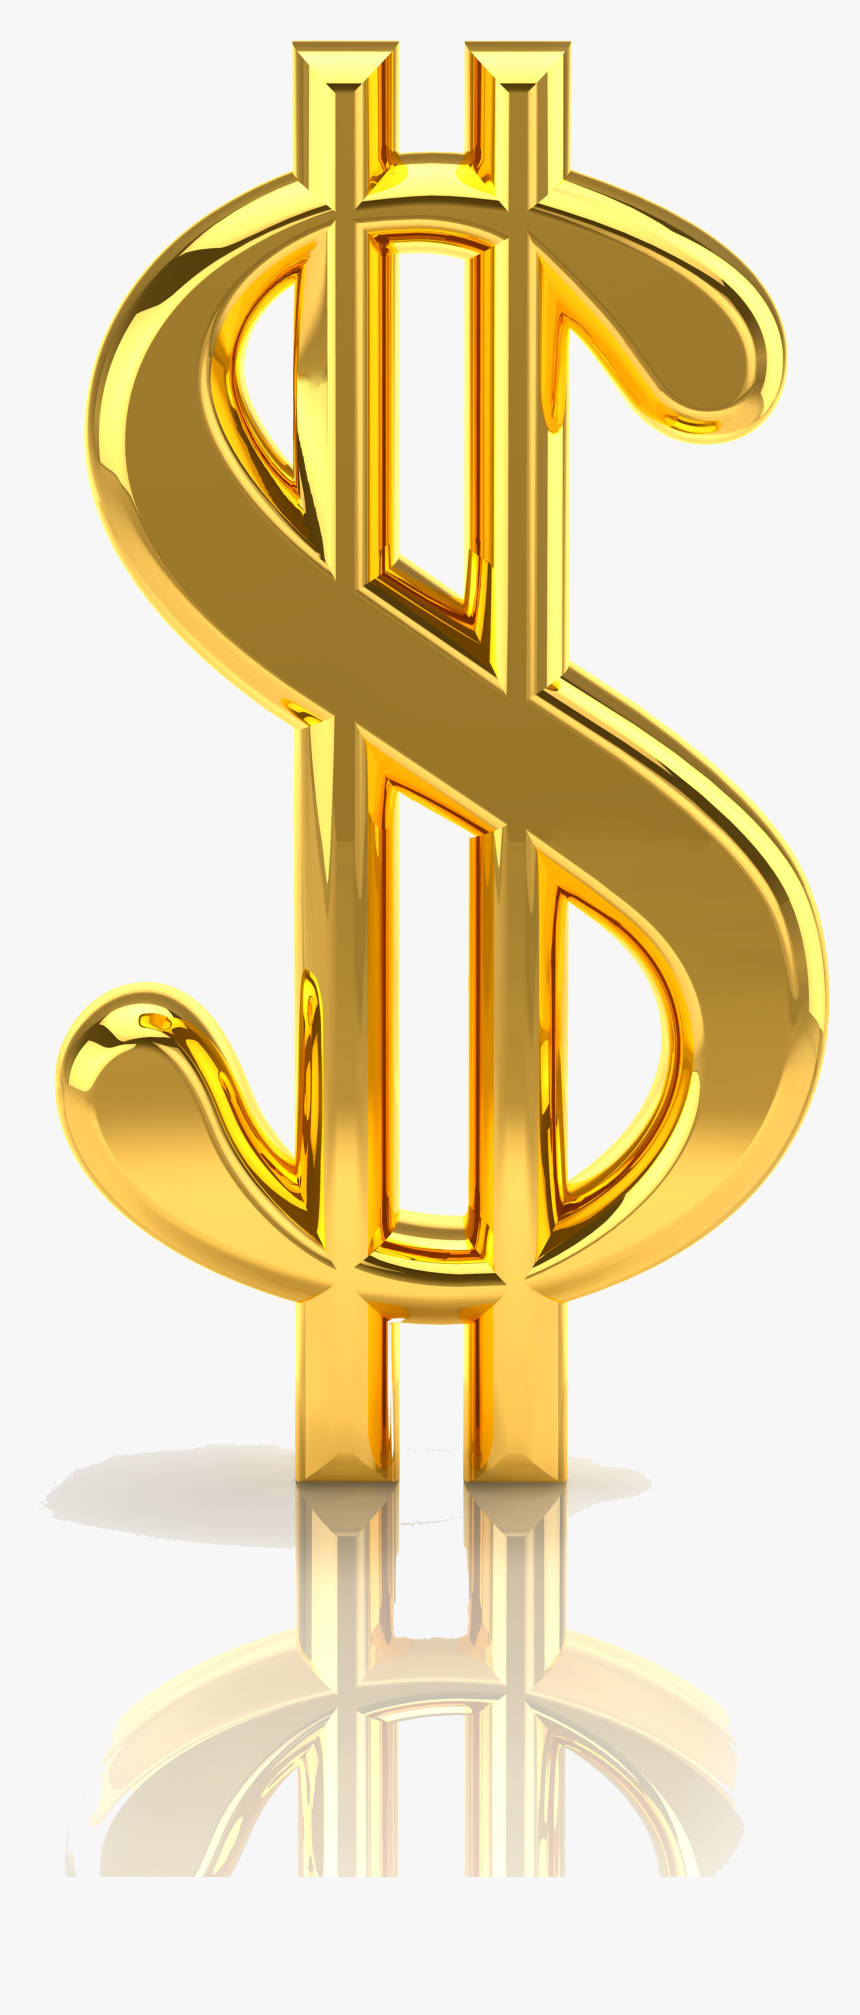 Bạn có thể hình dung được một đô la mạ vàng long lanh trong ánh sáng? Chắc chắn đây là một hình ảnh đầy ấn tượng với sự kết hợp độc đáo giữa tiền bạc và màu sắc quý giá. Đừng bỏ lỡ bức ảnh chụp tỉ mẩn này!